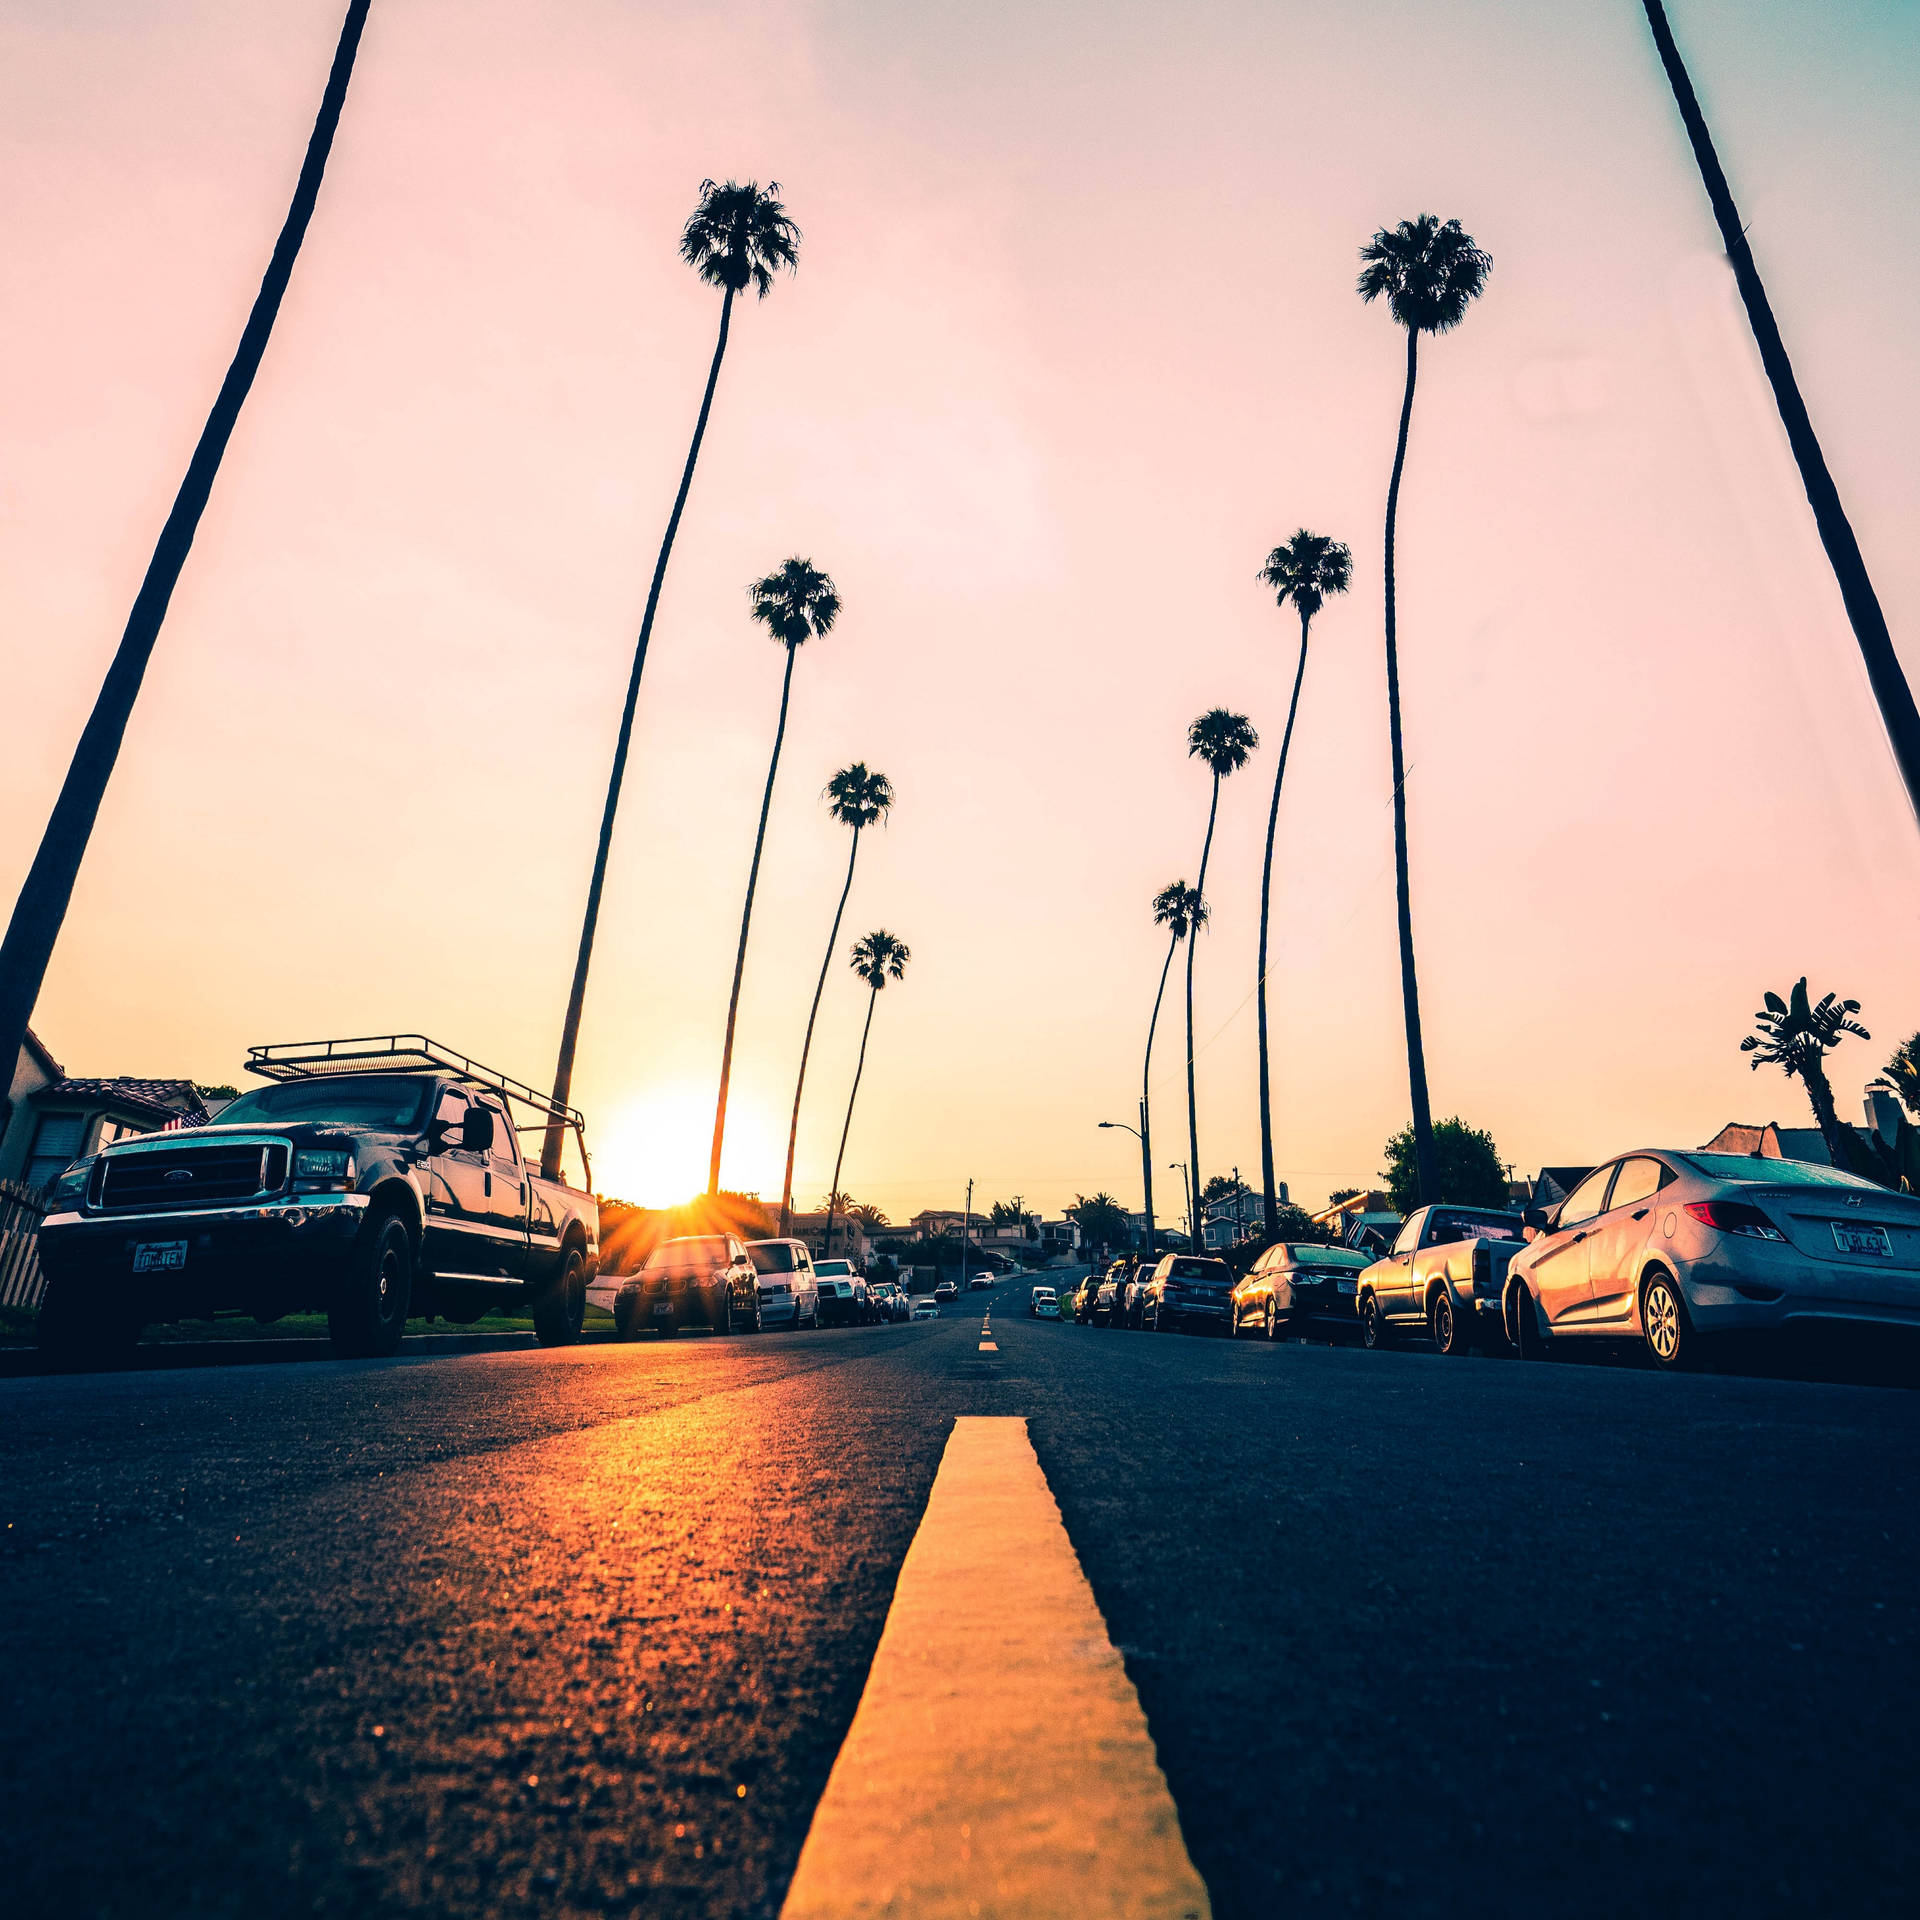 Kalifornische Straße Mit Palmen